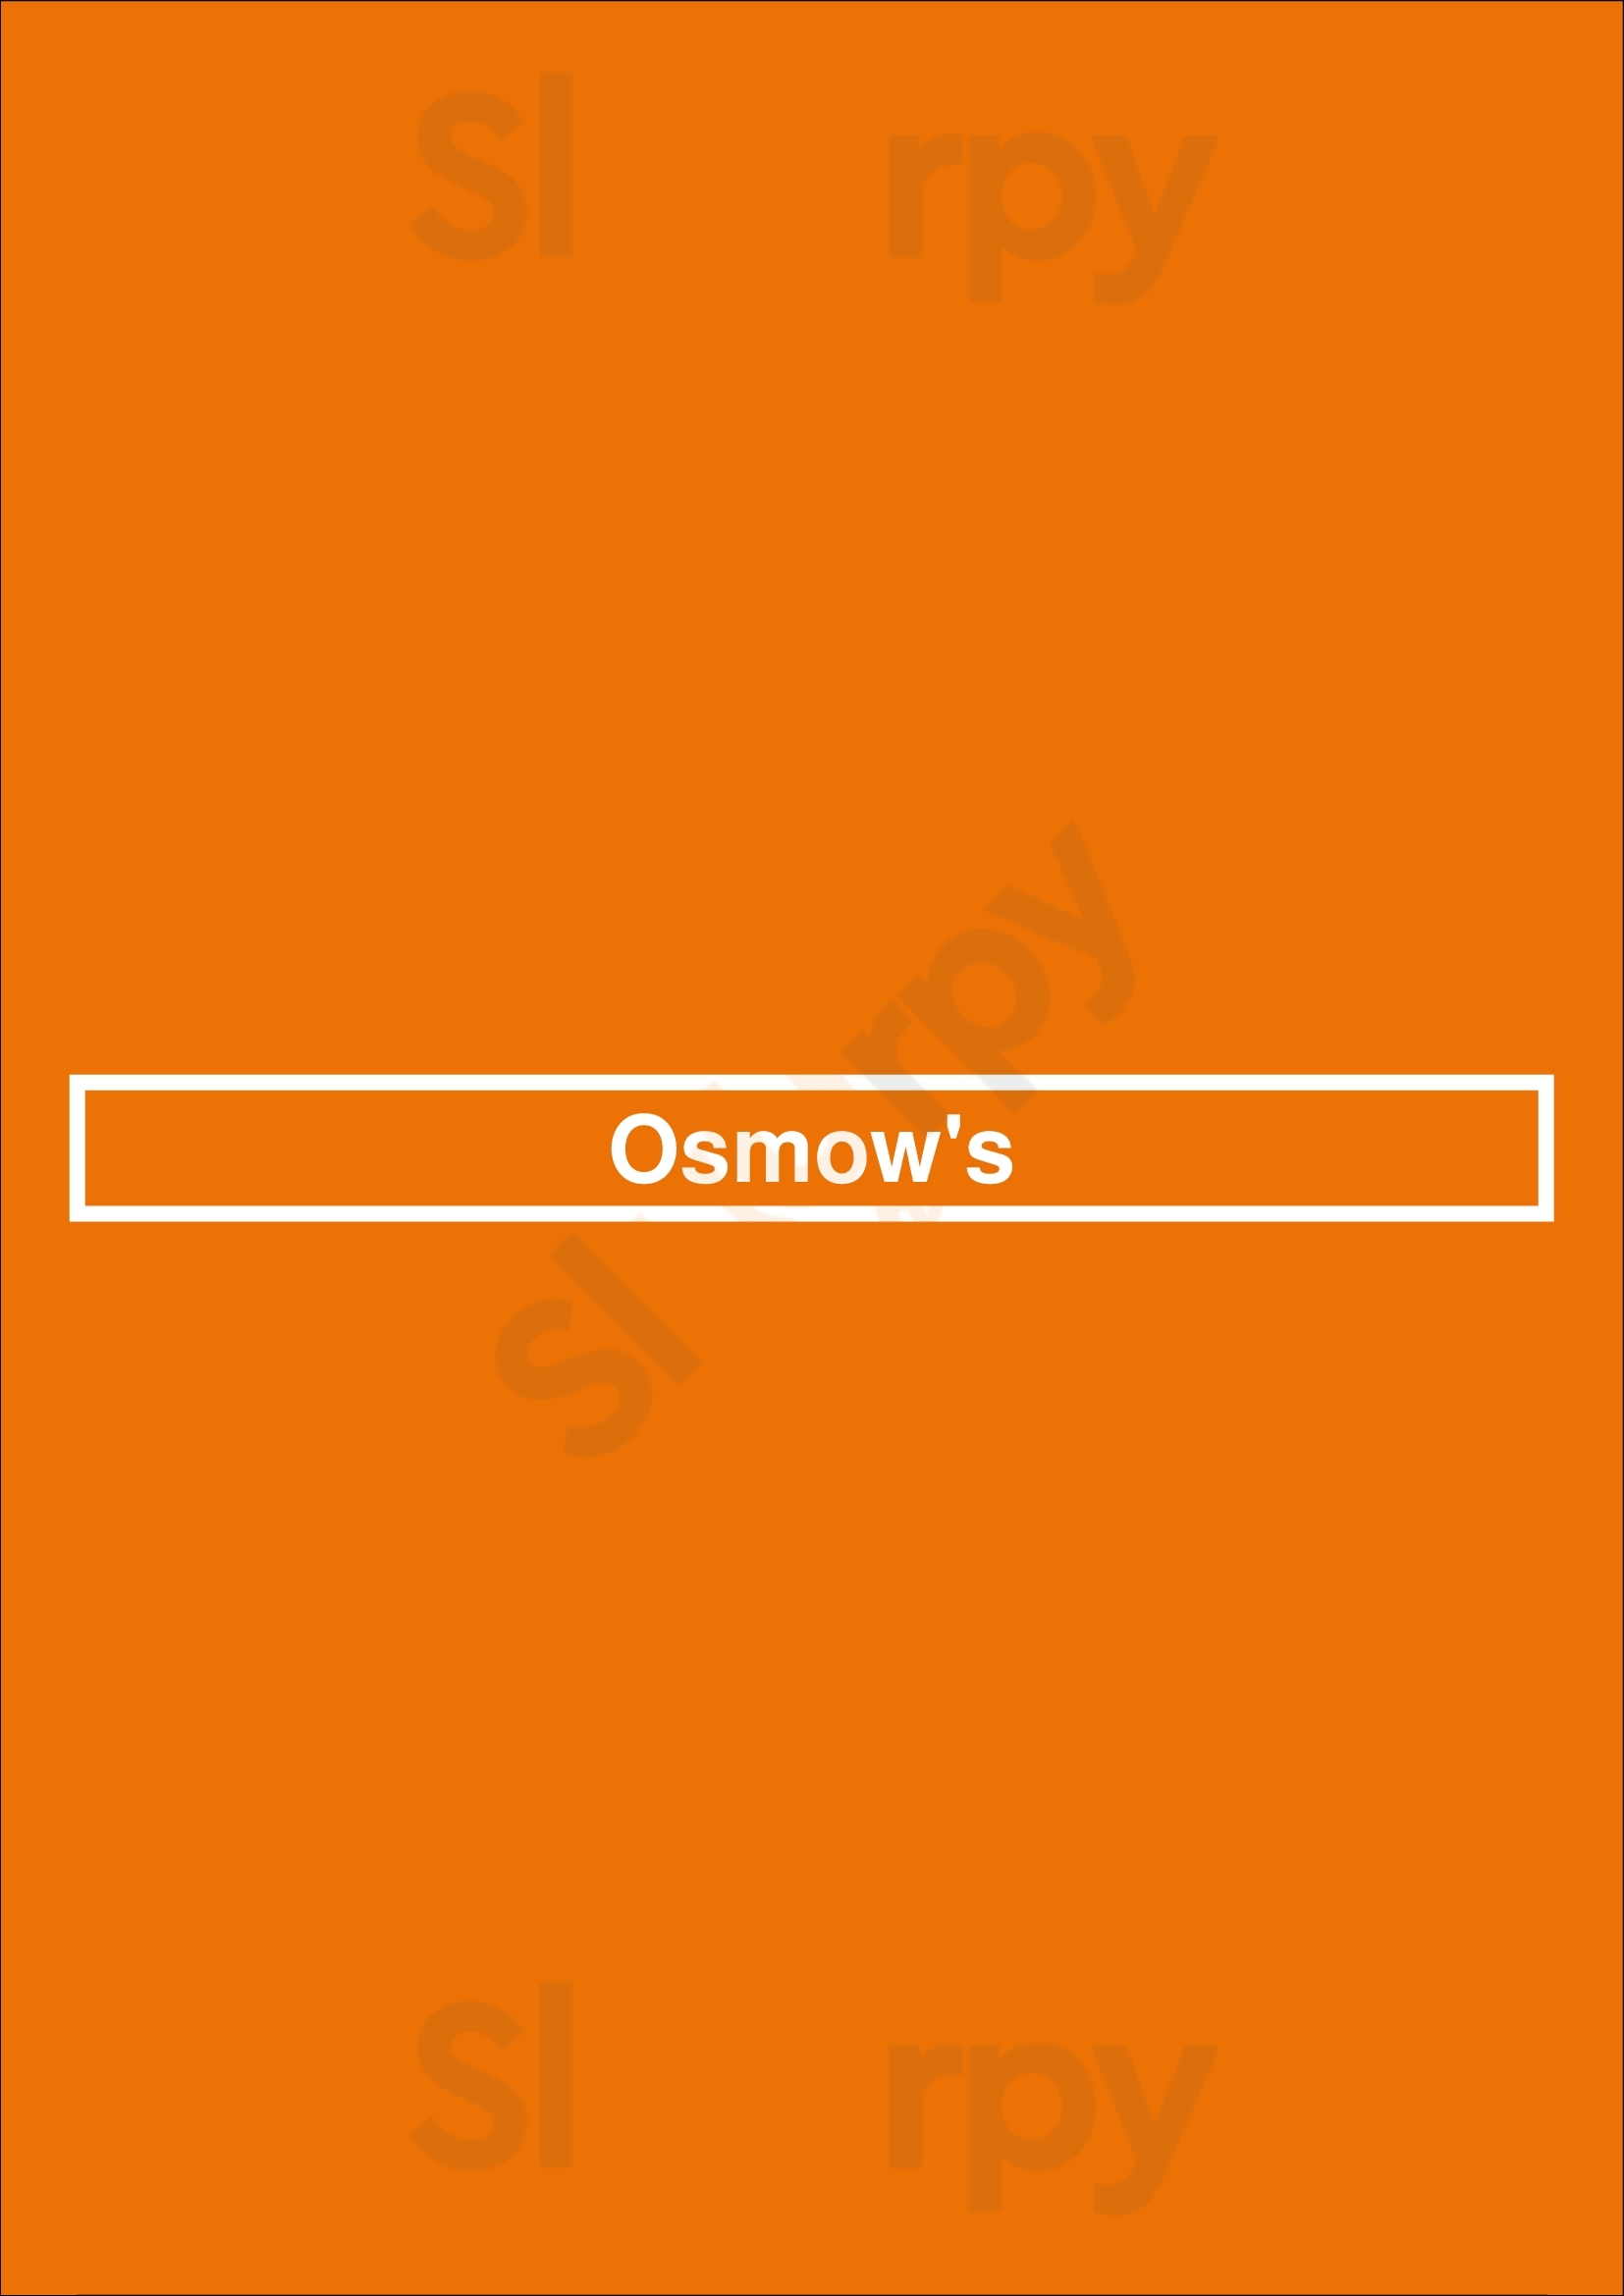 Osmow's Toronto Menu - 1